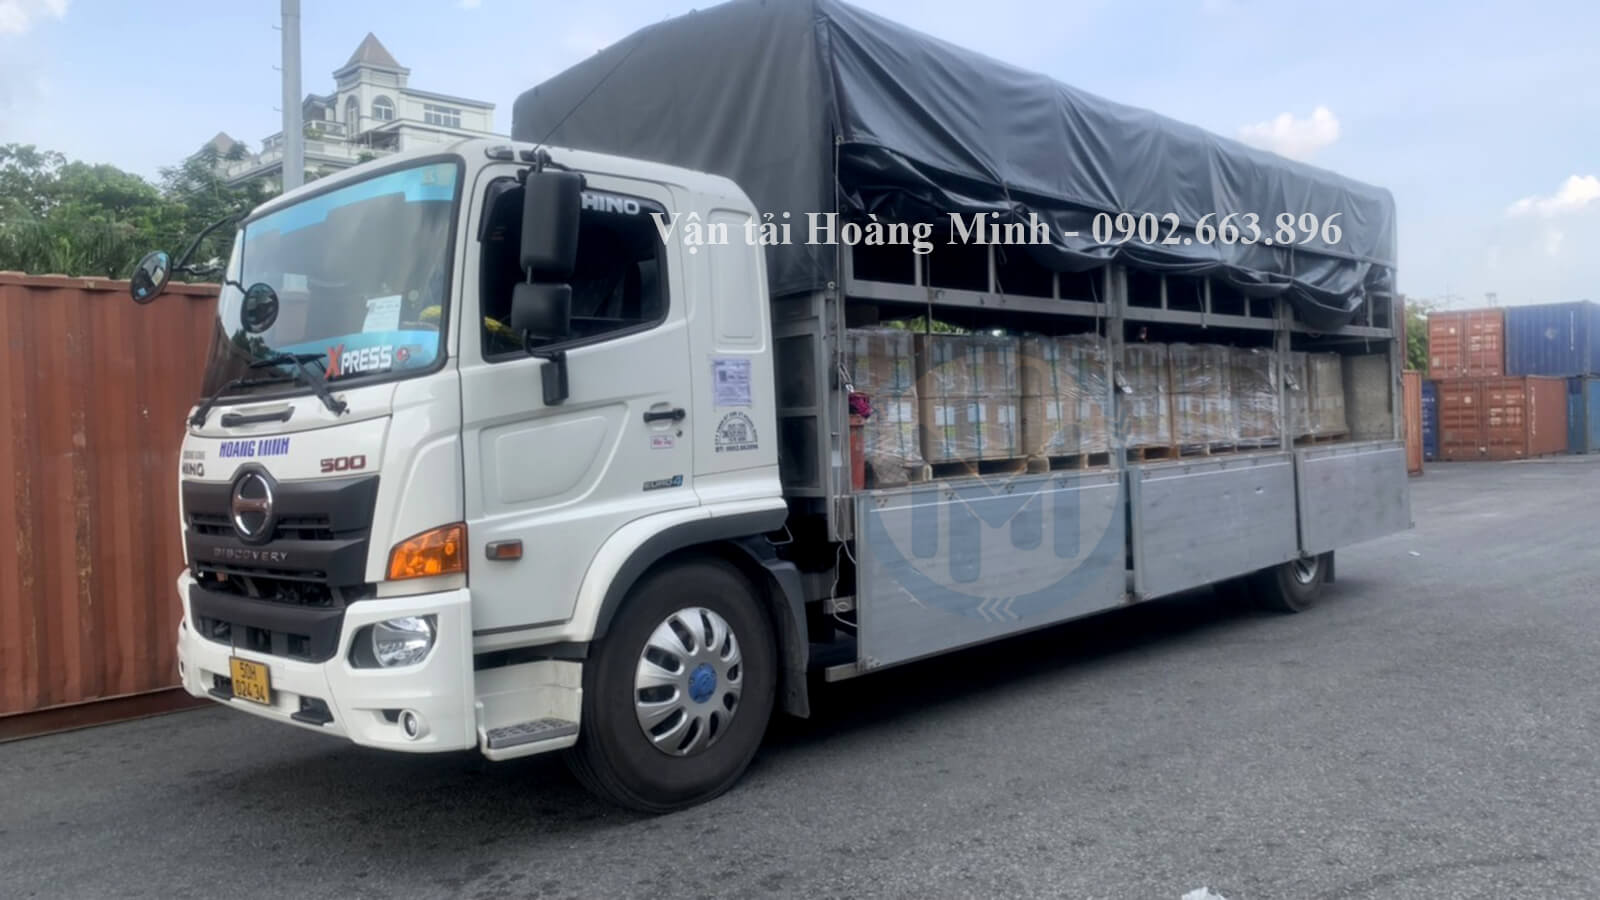 Vận chuyển hàng hóa Quận Phú Nhuận